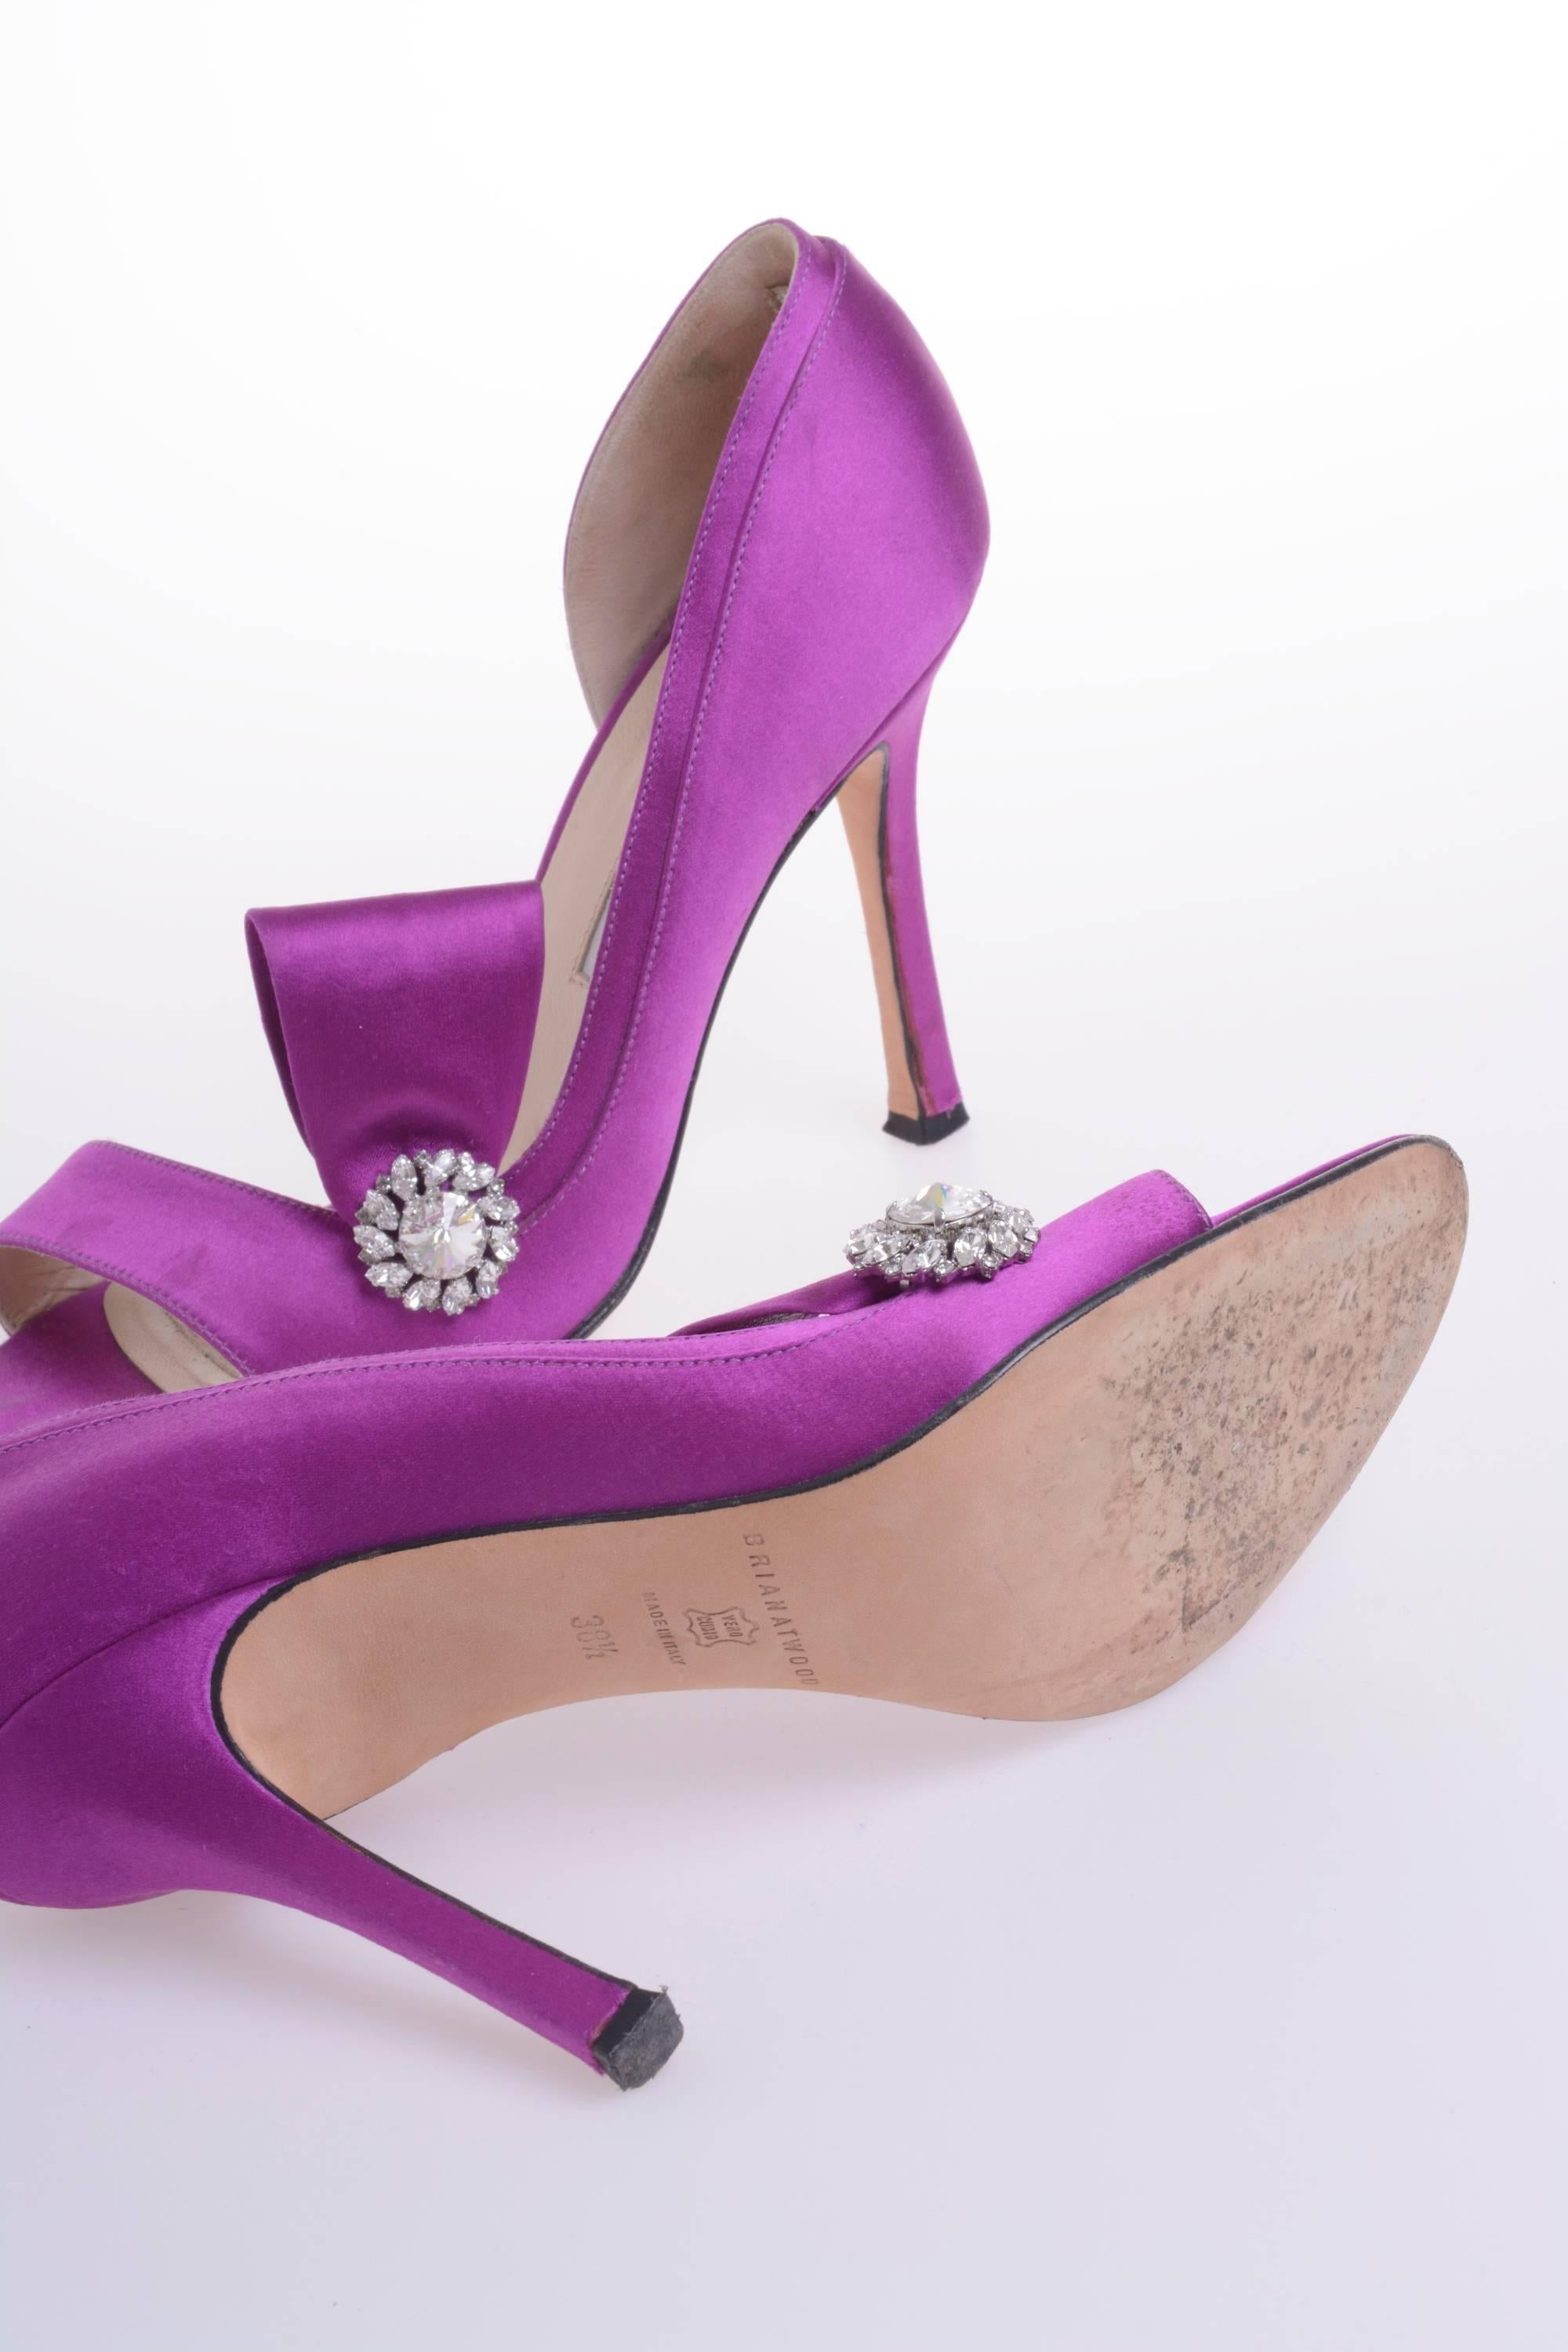 purple satin shoes